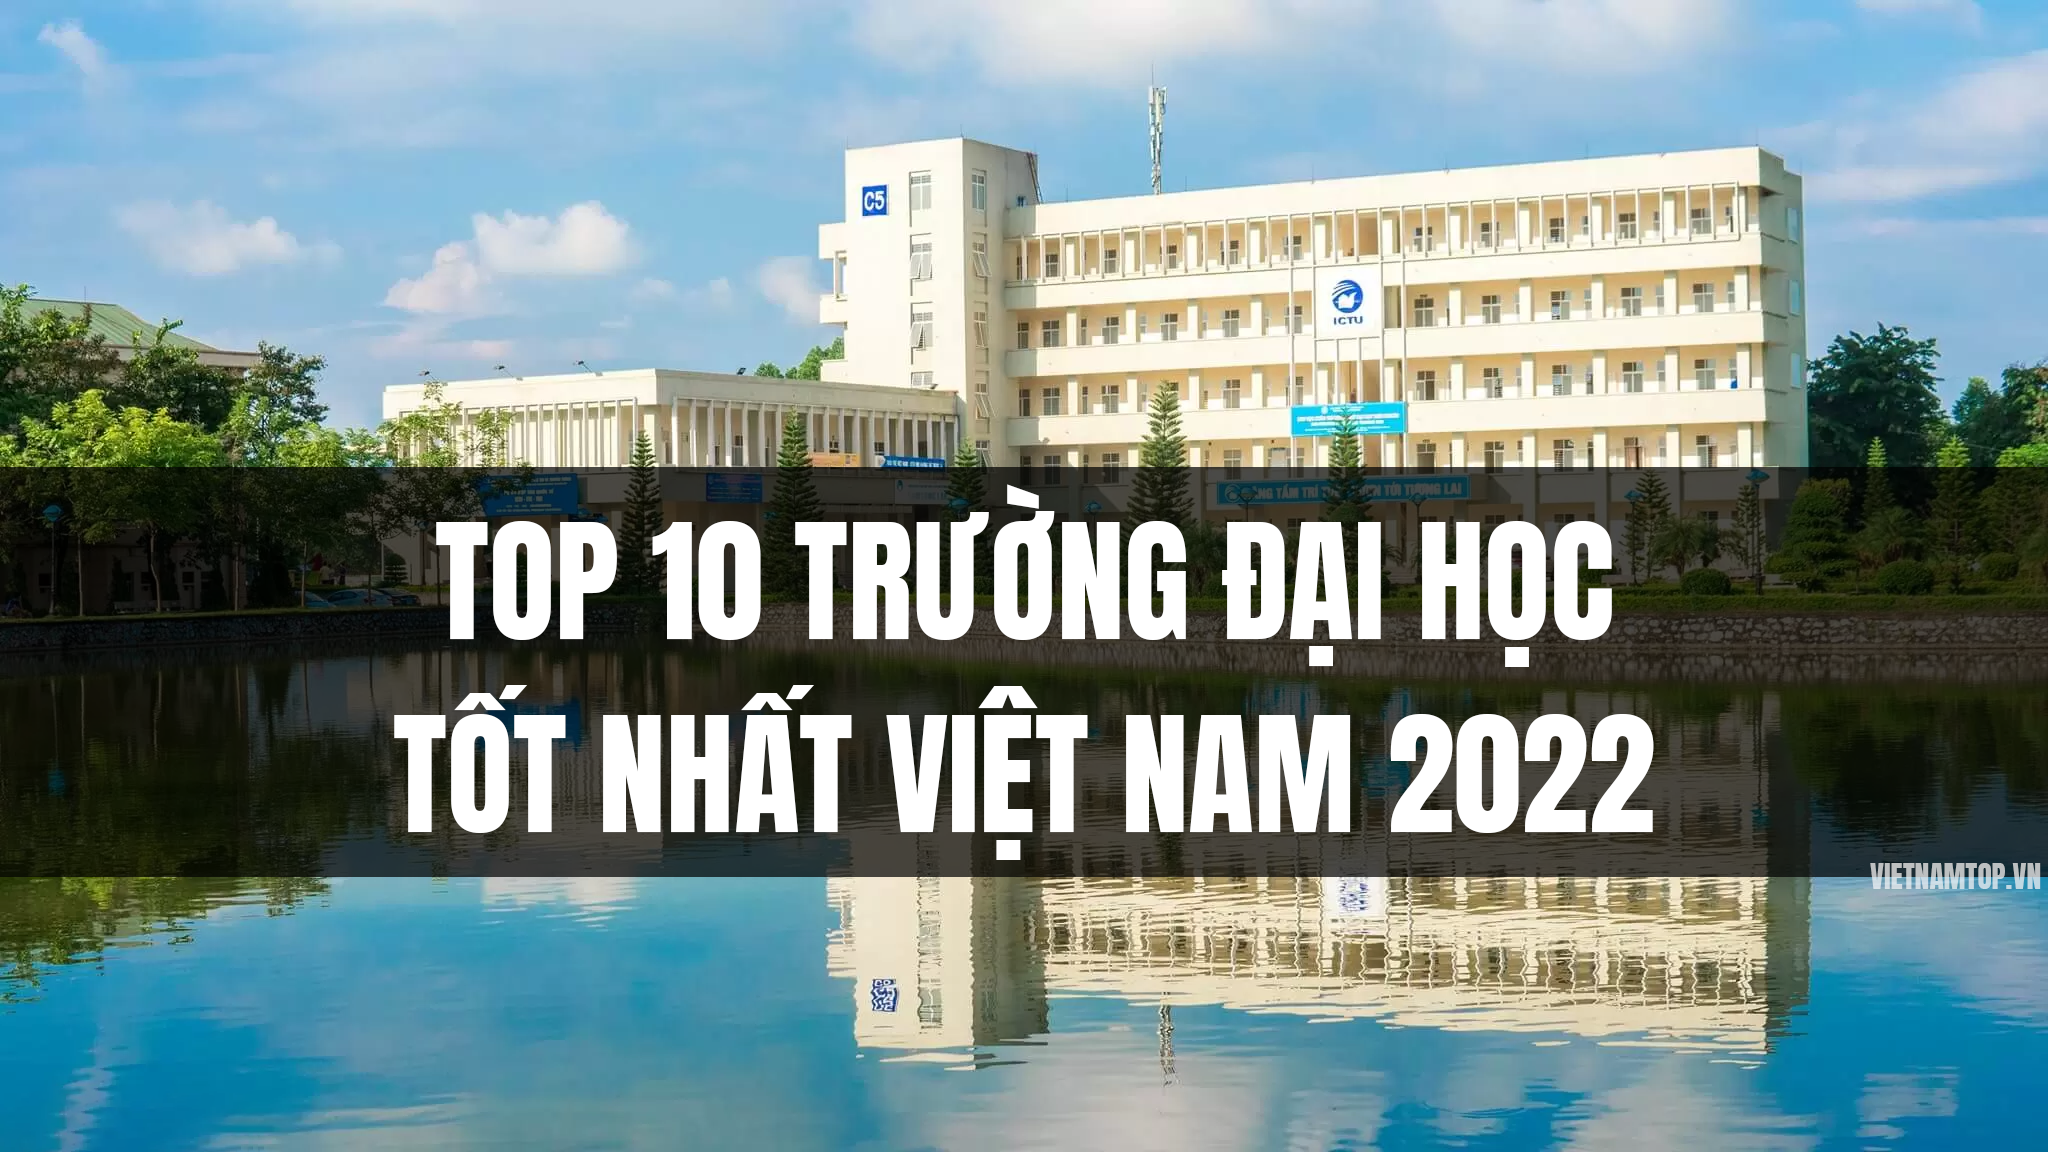 Top 10 trường đại học tốt nhất Việt Nam 2022